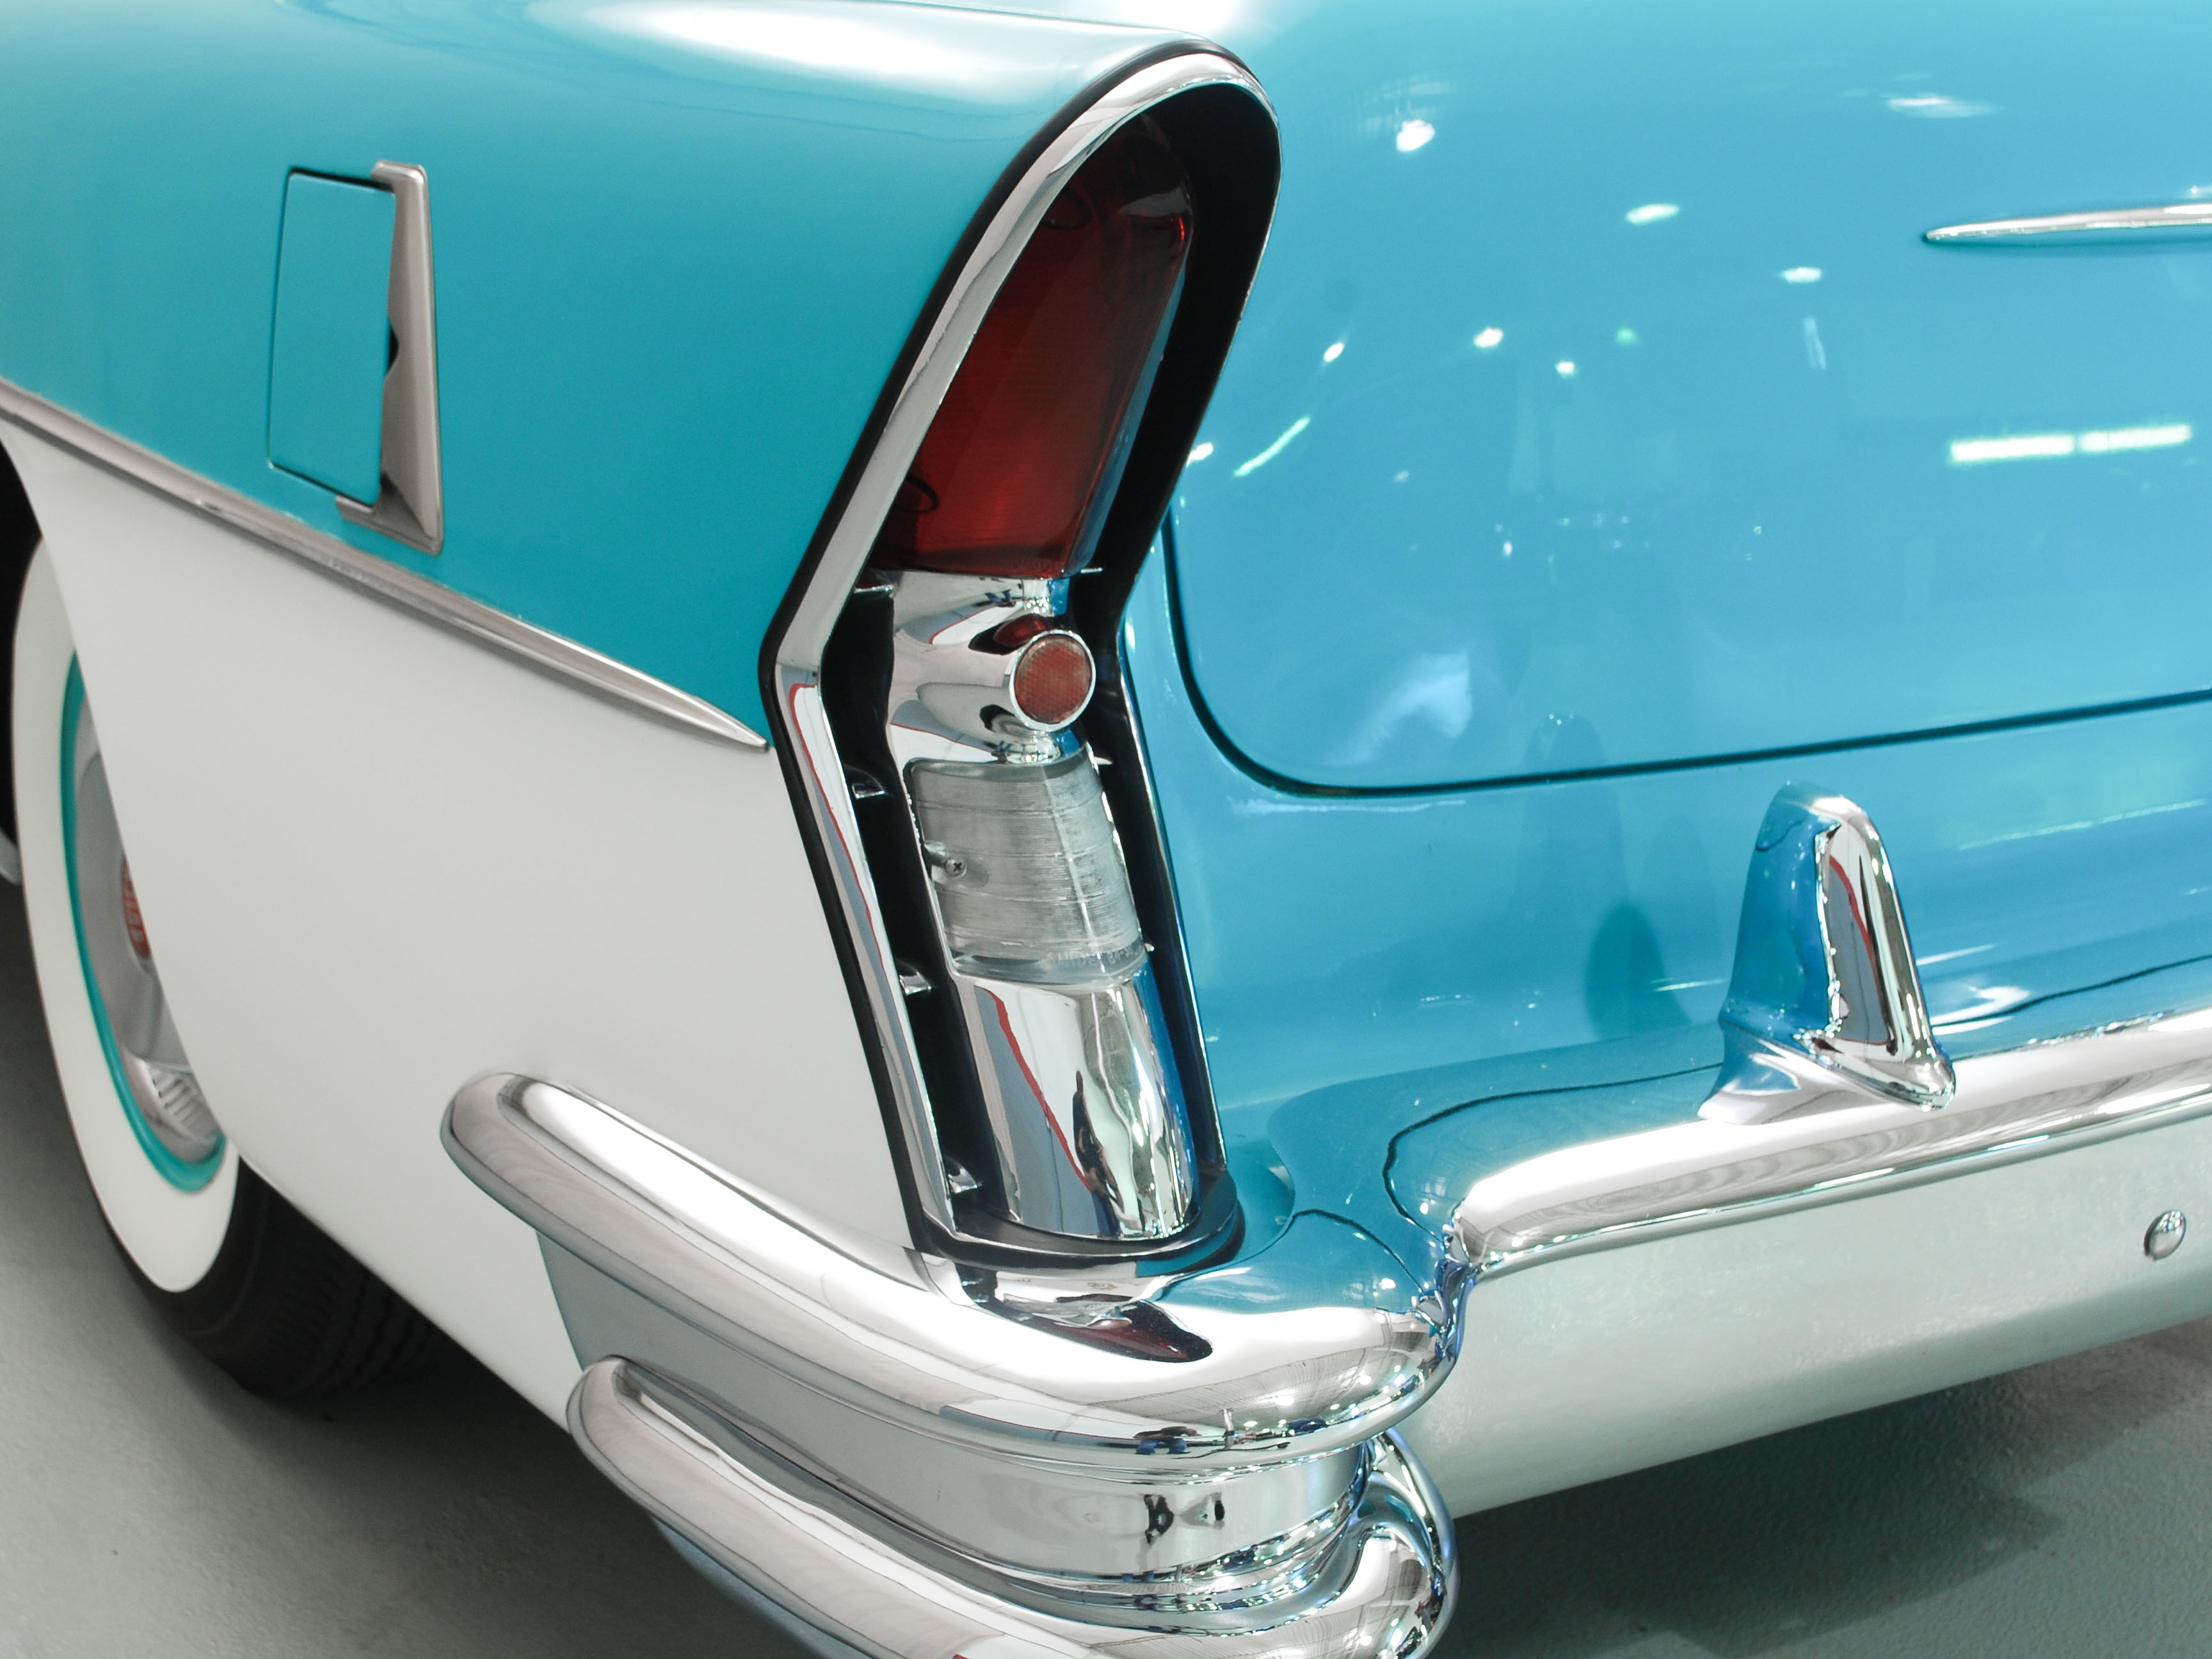 1957 buick super model 53